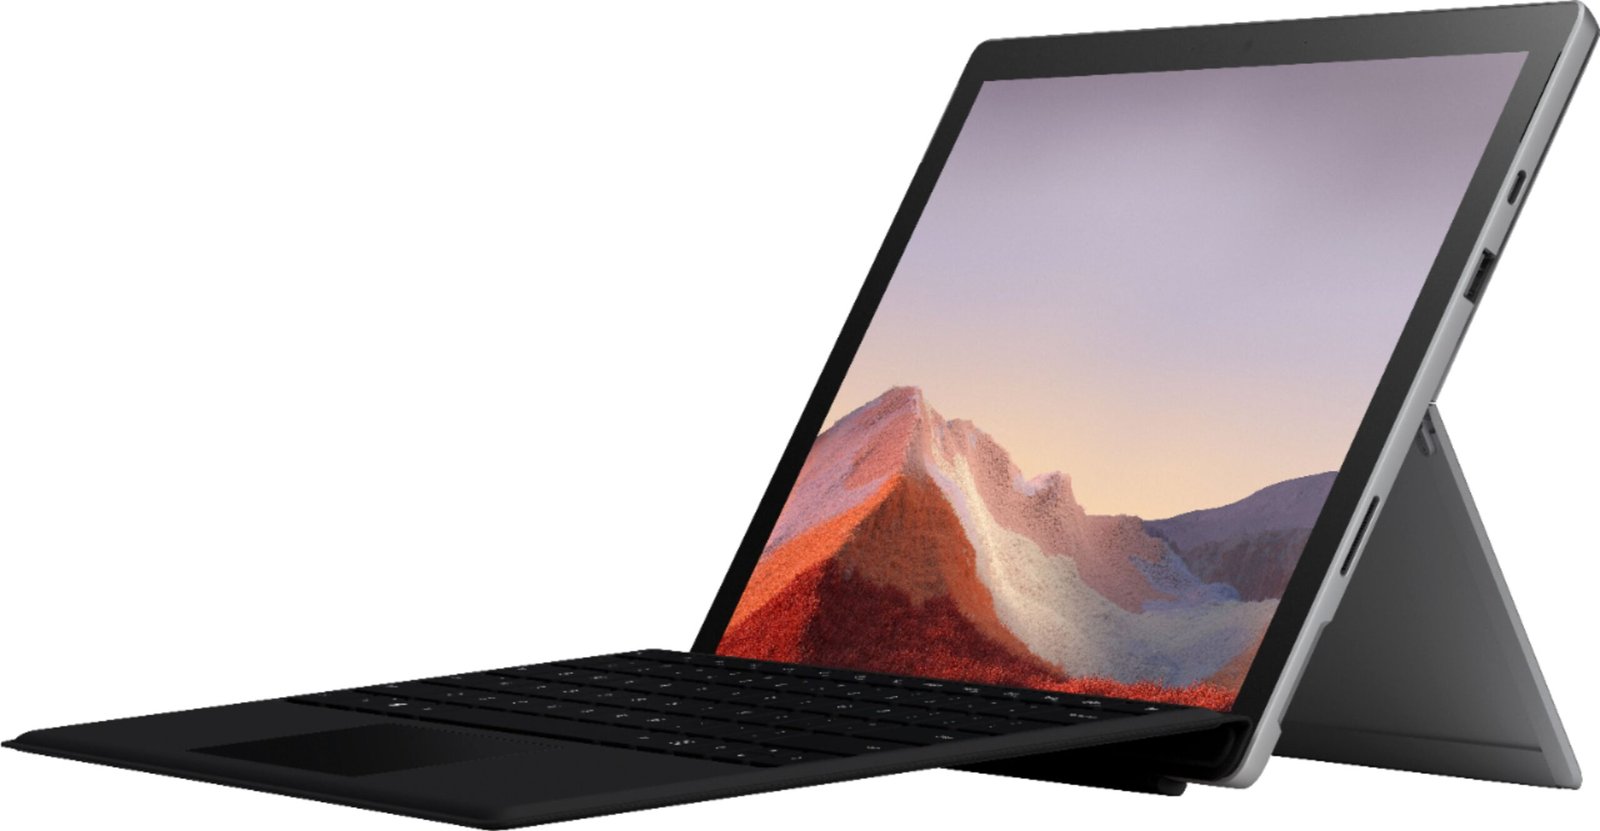  Microsoft Surface Go 3 - Pantalla táctil de 10,5 - Intel®  Core™ i3 - Memoria de 8 GB - SSD de 128 GB - Solo dispositivo - Platino  (último modelo) : Electrónica